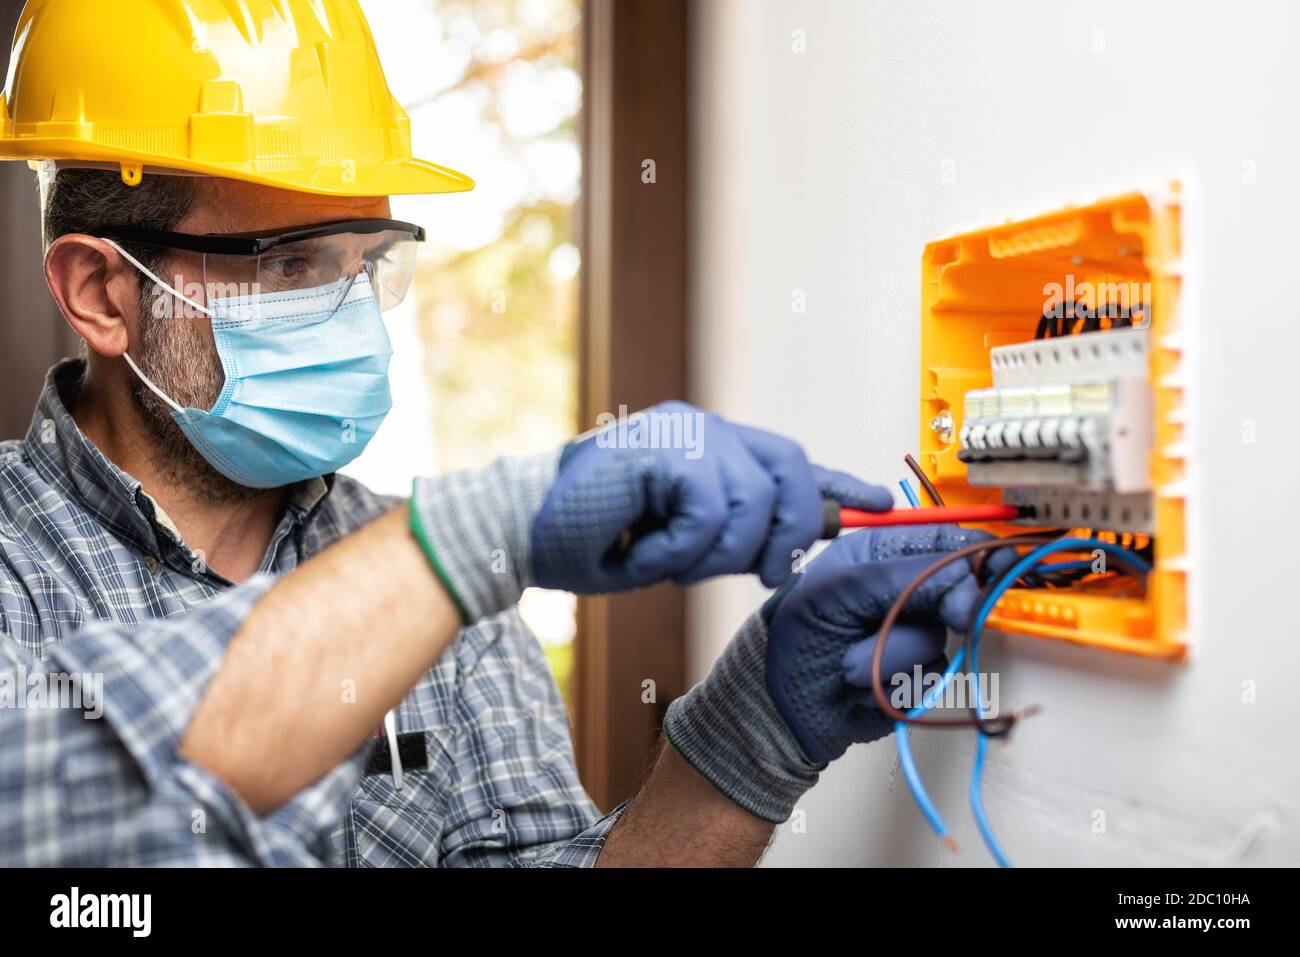 Elektriker bei der Arbeit an einem elektrischen Panel mit Helm, Schutzbrille und Handschuhe geschützt; tragen Sie die chirurgische Maske, um die Ausbreitung von Coronavirus zu verhindern Stockfoto